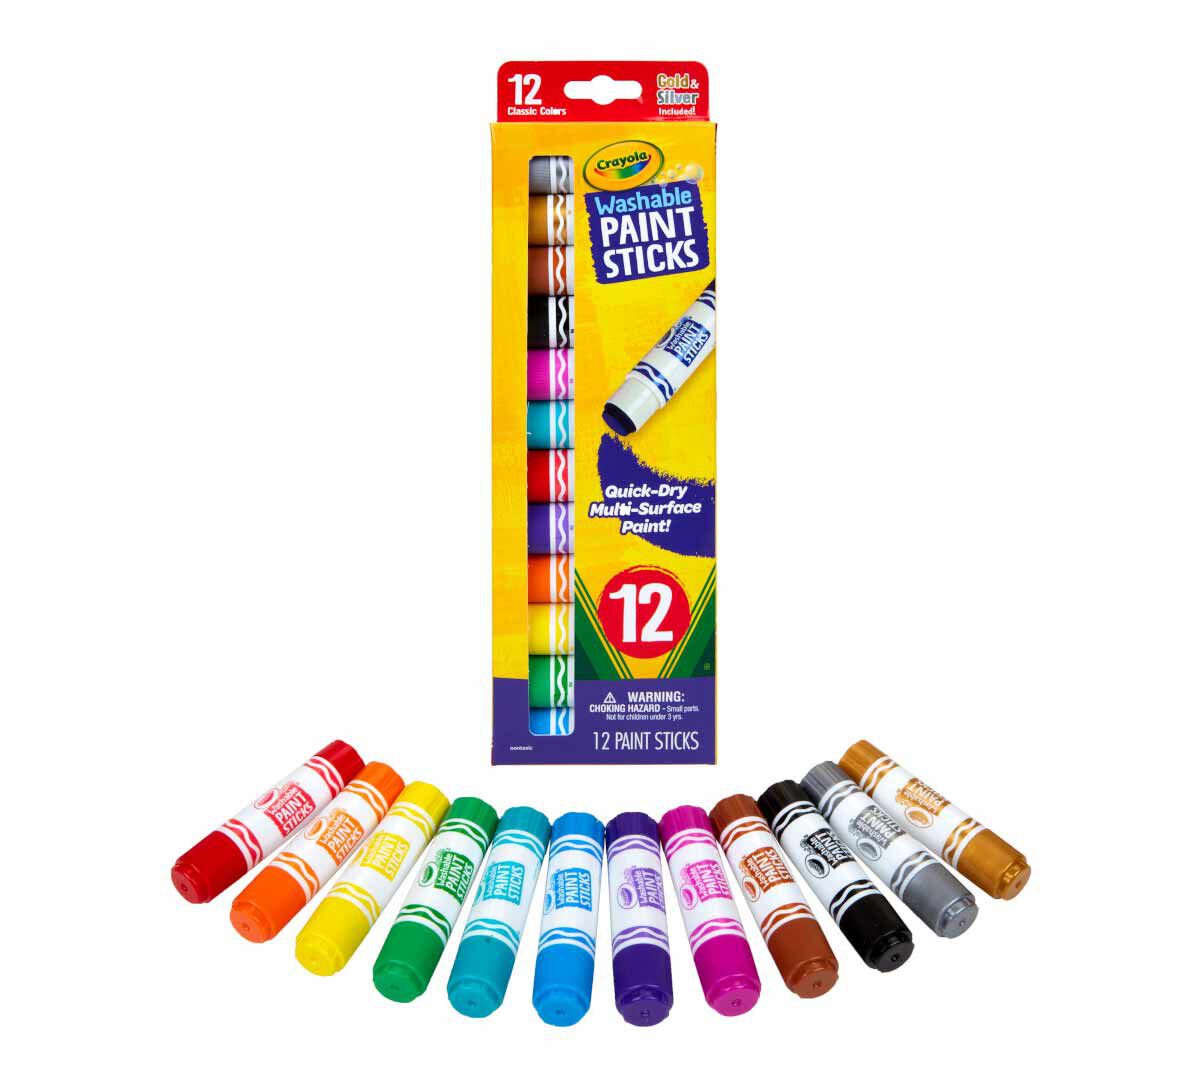  I profumelli Set ahorro para dibujo con colores perfumadas color/modelo surtido para escuela y tiempo libre 7455 Crayola  